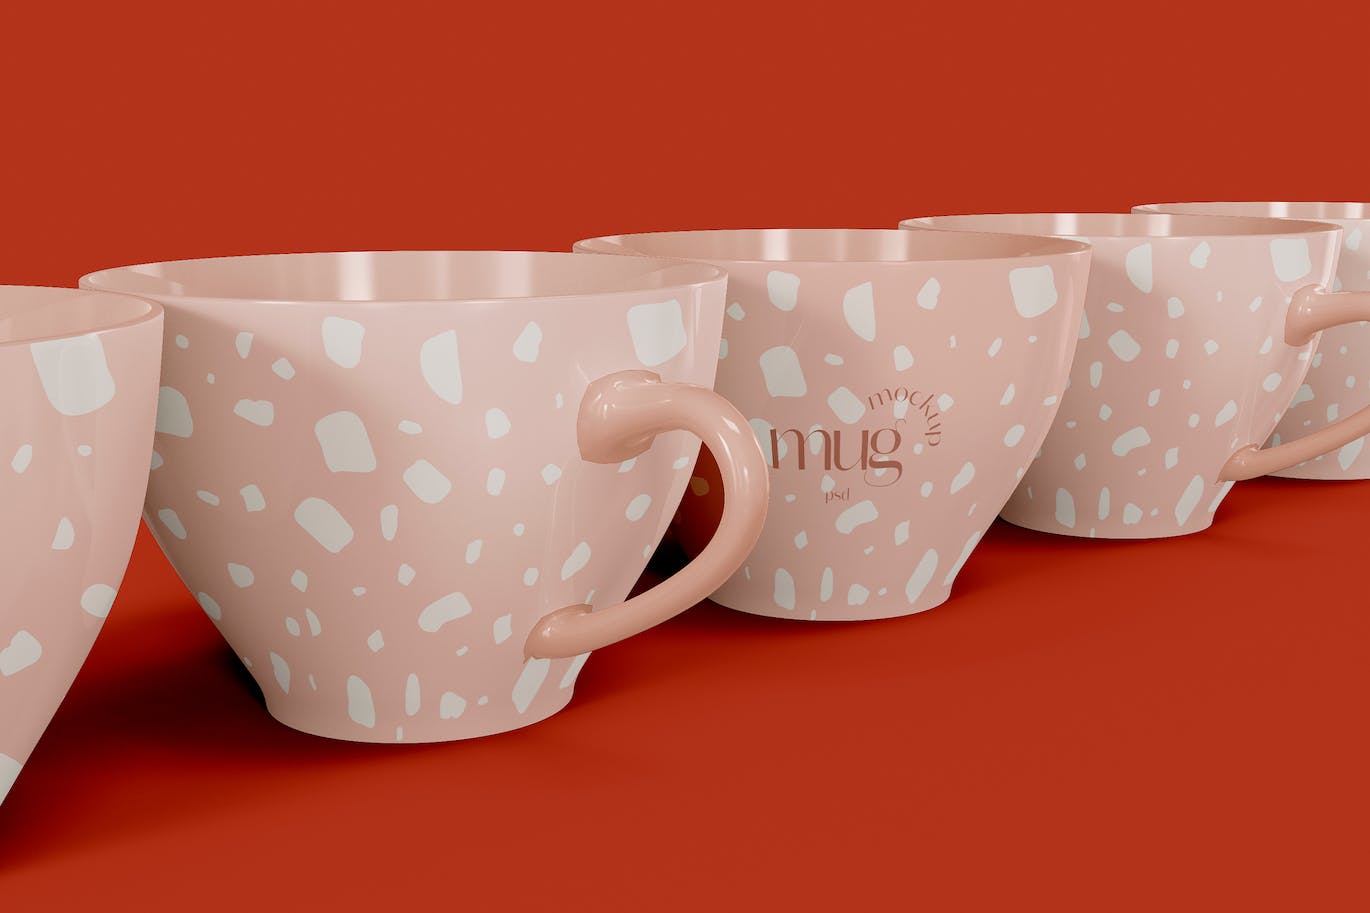 陶瓷咖啡马克杯杯身设计样机模板v8 Ceramic Mugs Mockup 样机素材 第1张